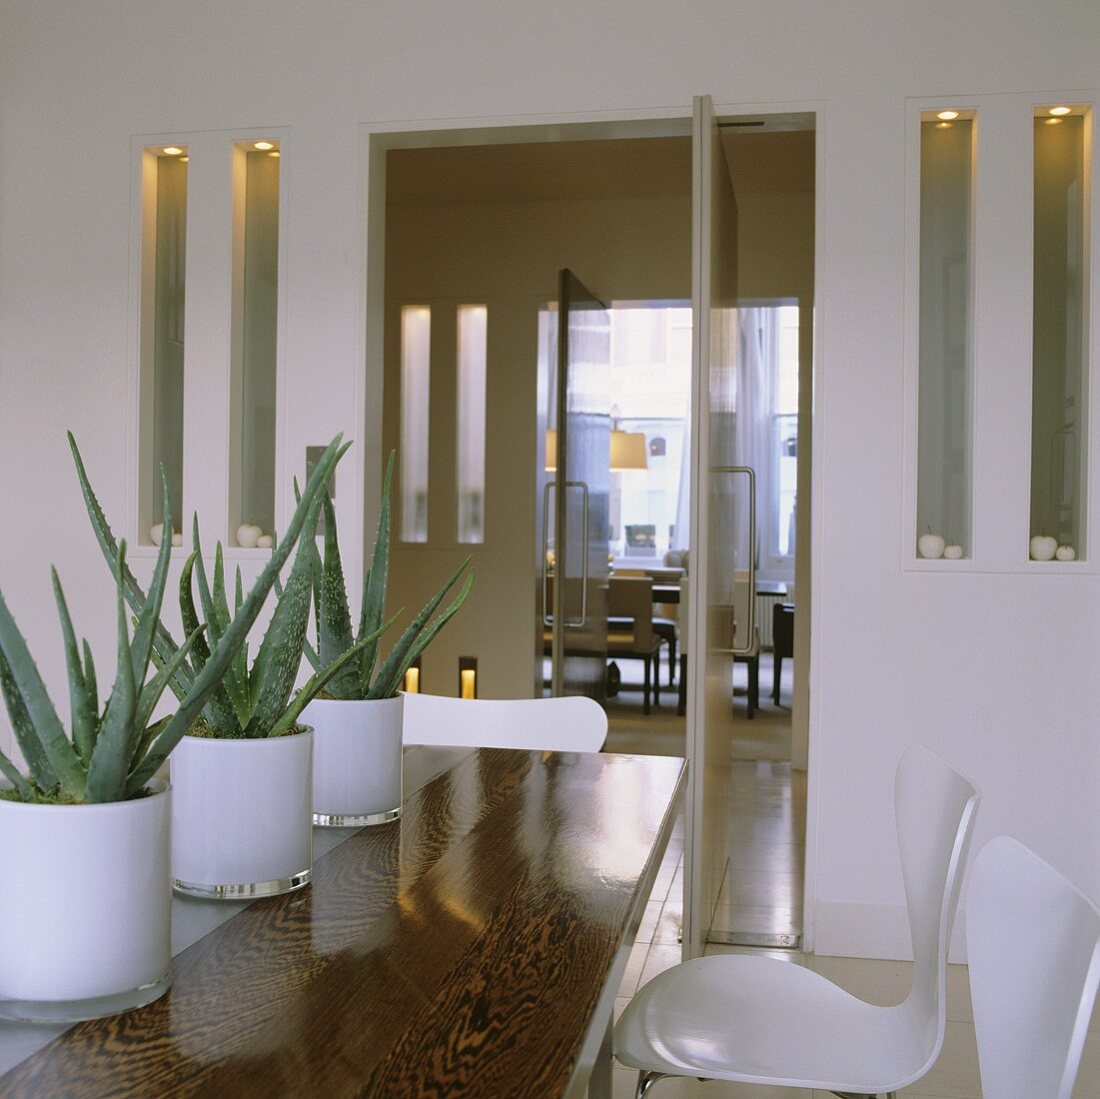 Kakteenreihe im weissen Glastopf auf Holztisch und Wandnischen neben offener Tür mit Blick in Essraum